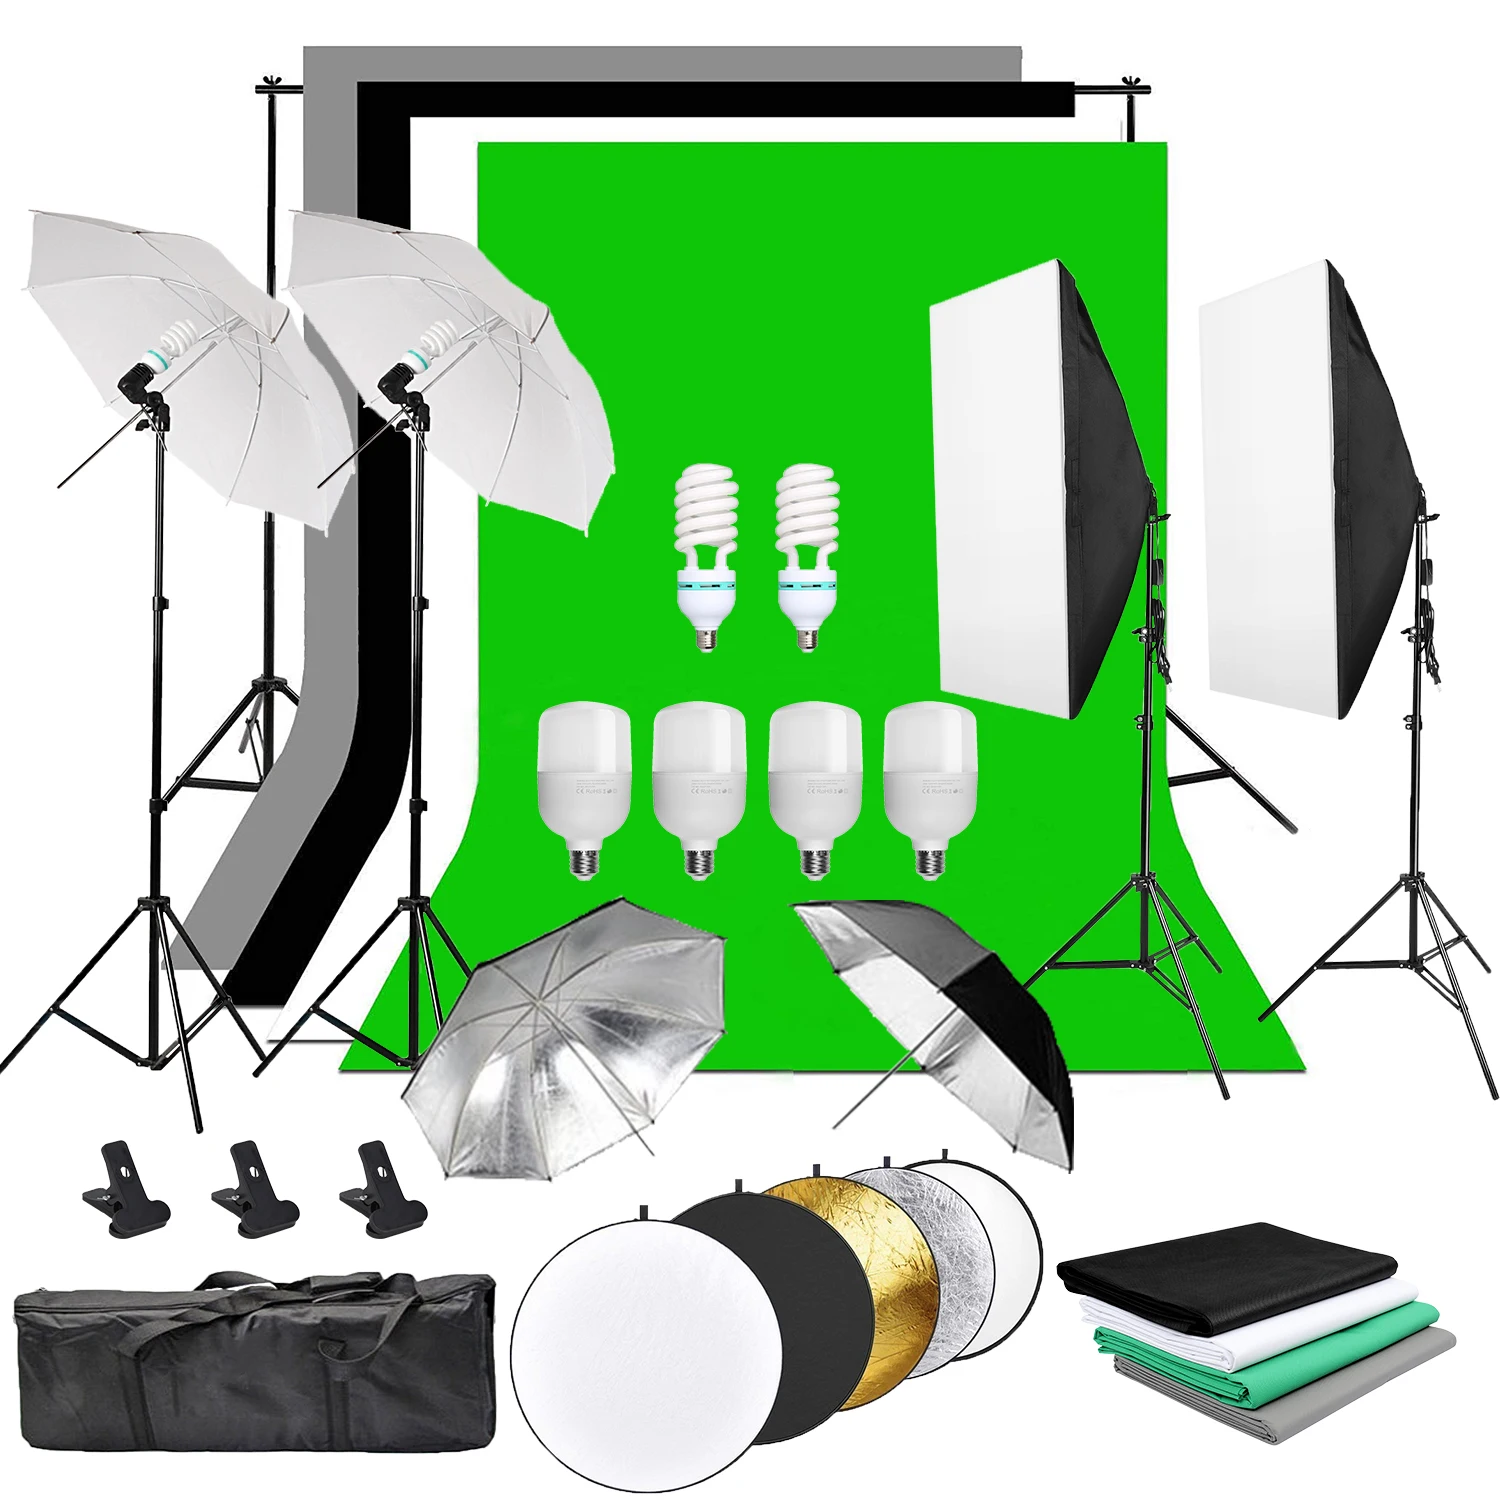 ZUOCHEN фотостудия фон мягкое зонтичное освещение комплект фоновая стойка 4 фона 6 студийные лампы